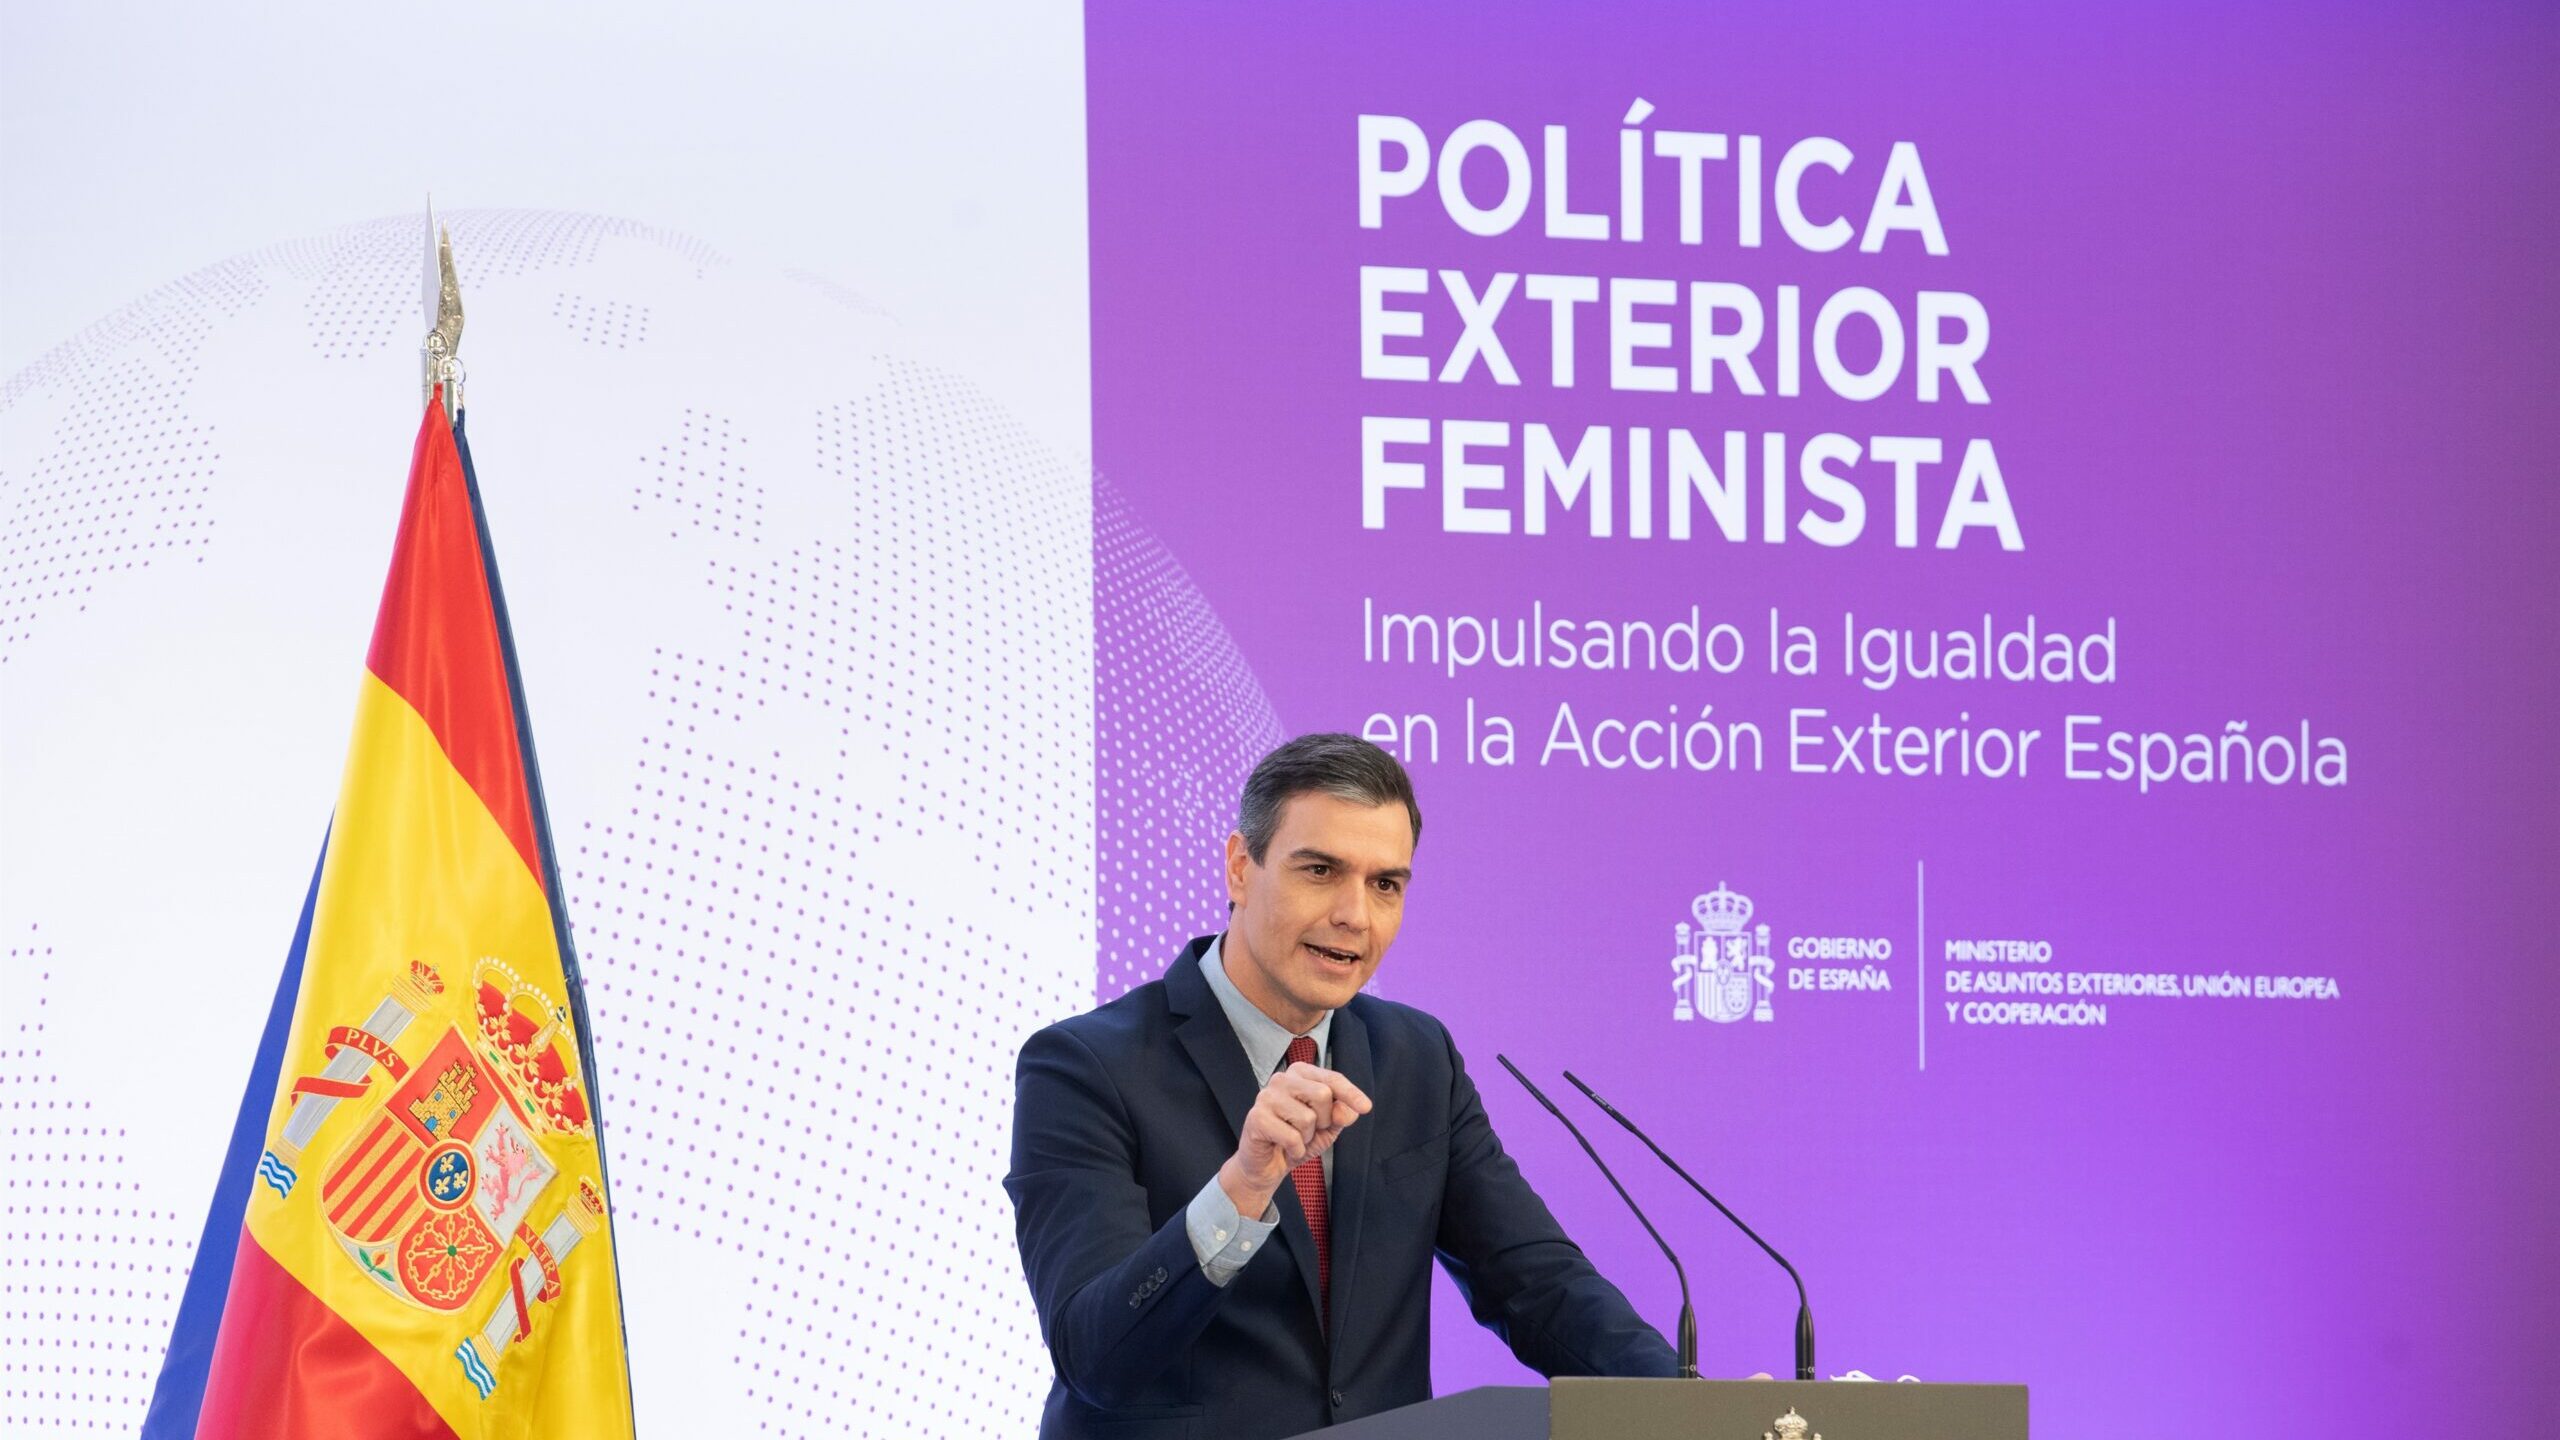 El Gobierno nombra una embajadora en misión especial para la Política Exterior Feminista